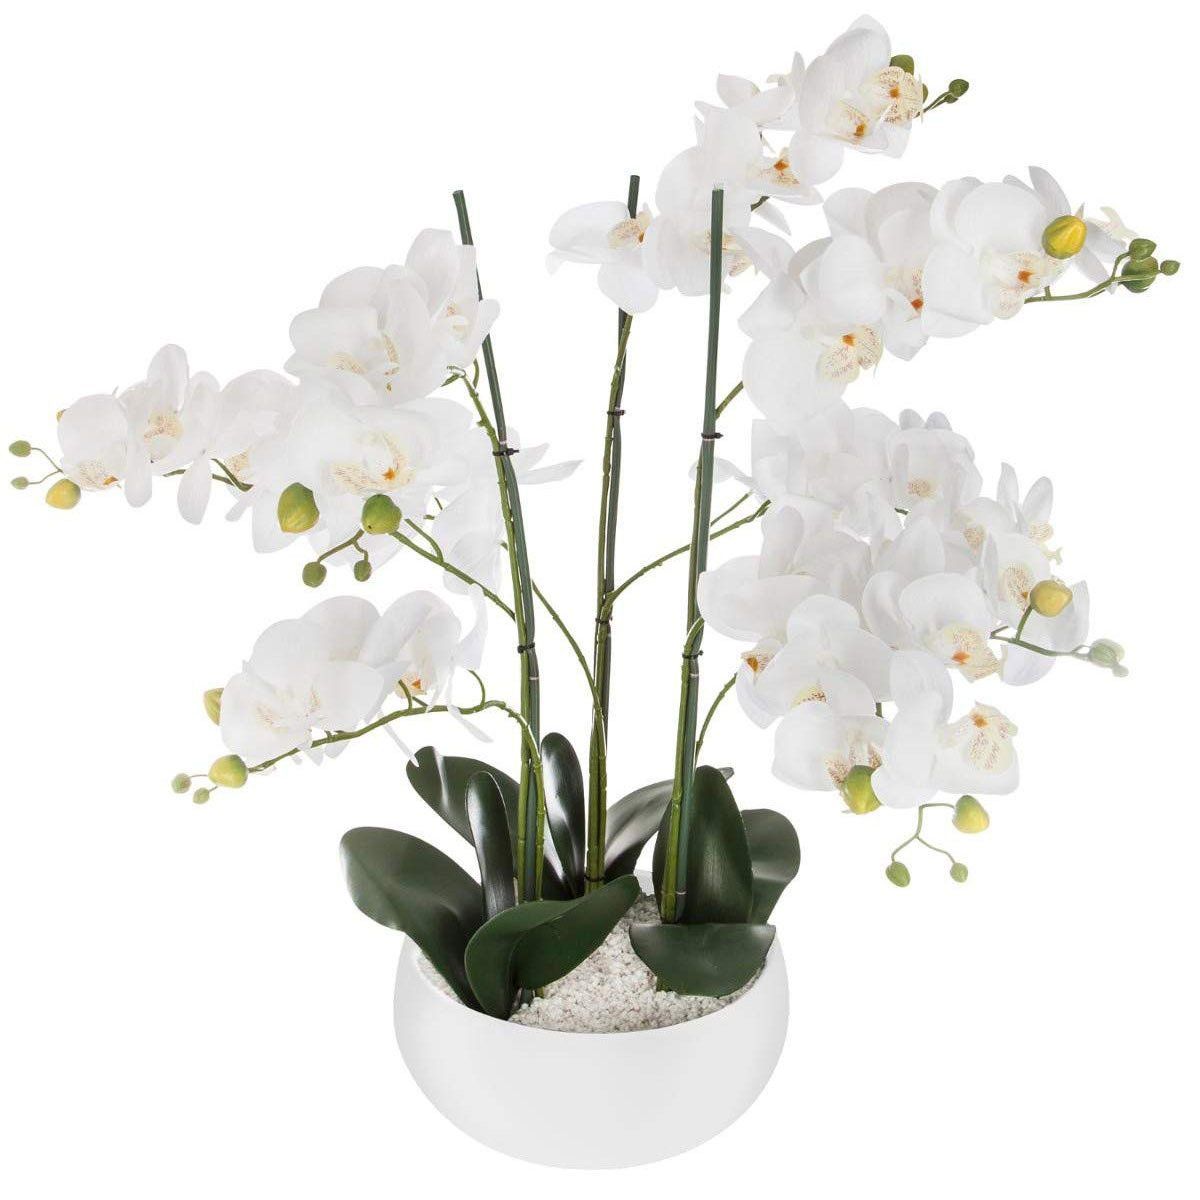 Atmosphera Umělá rostlina, umělá orchidej, bílý květináč, 65 cm - EMAKO.CZ s.r.o.